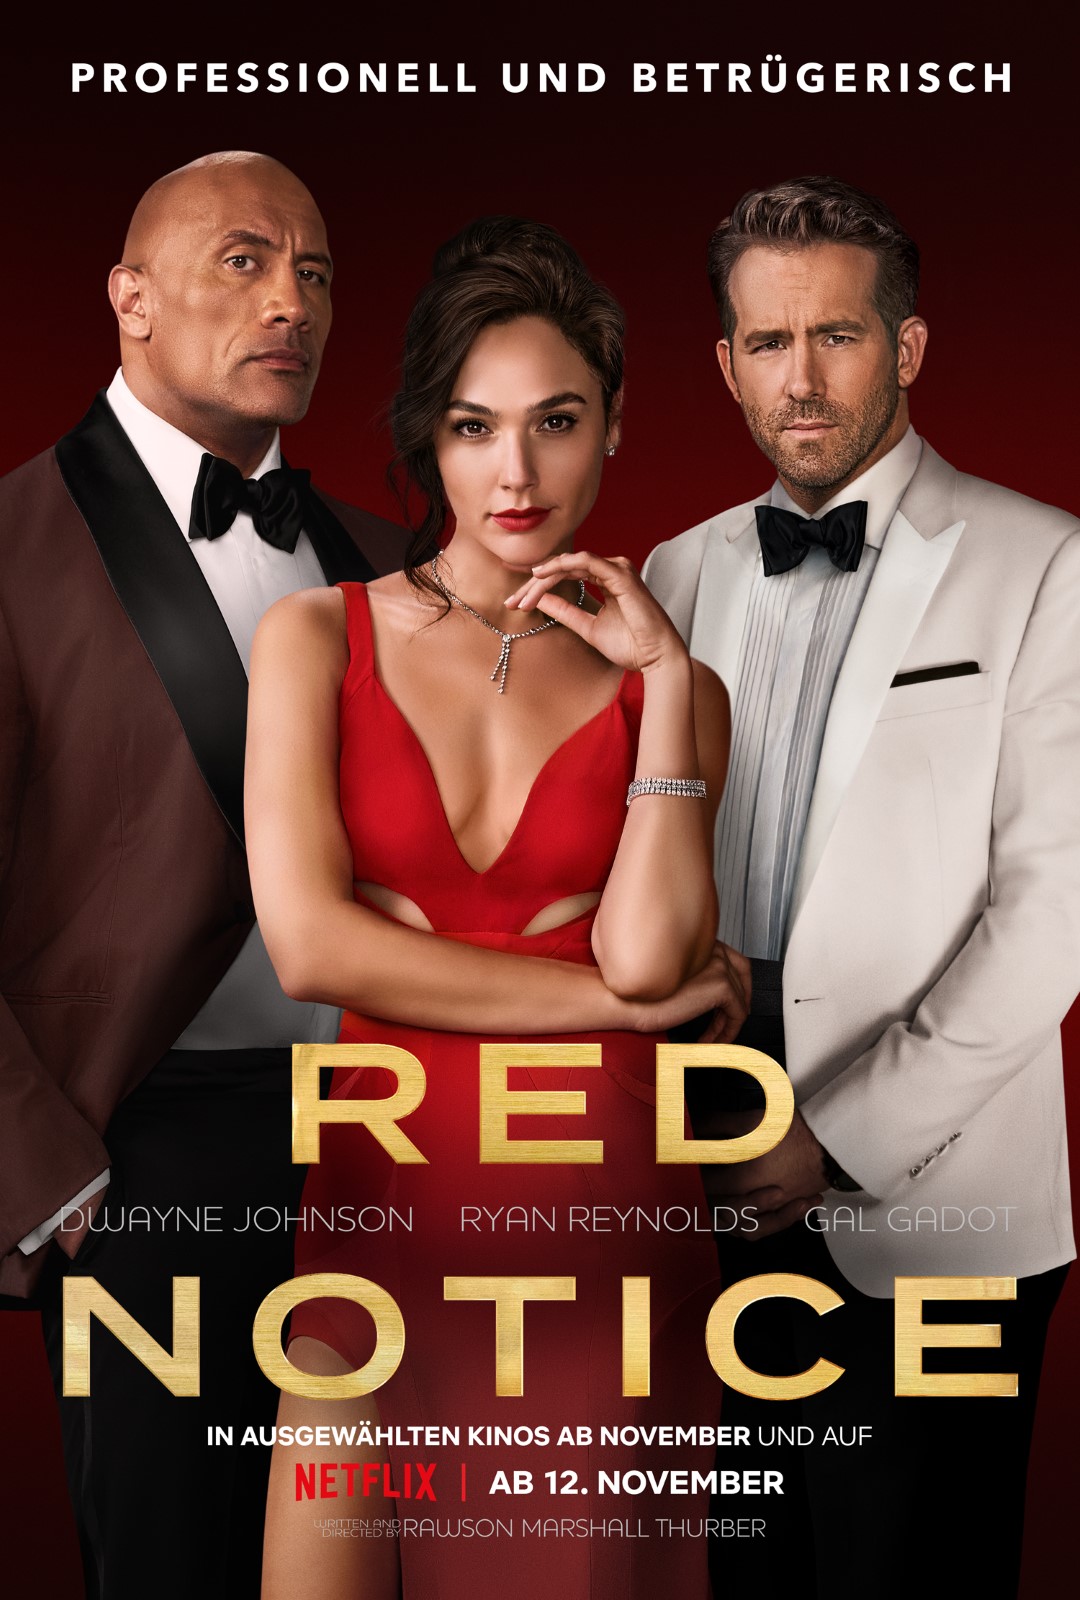 Netflix arbeitet an "Red Notice" Teil 2 & 3